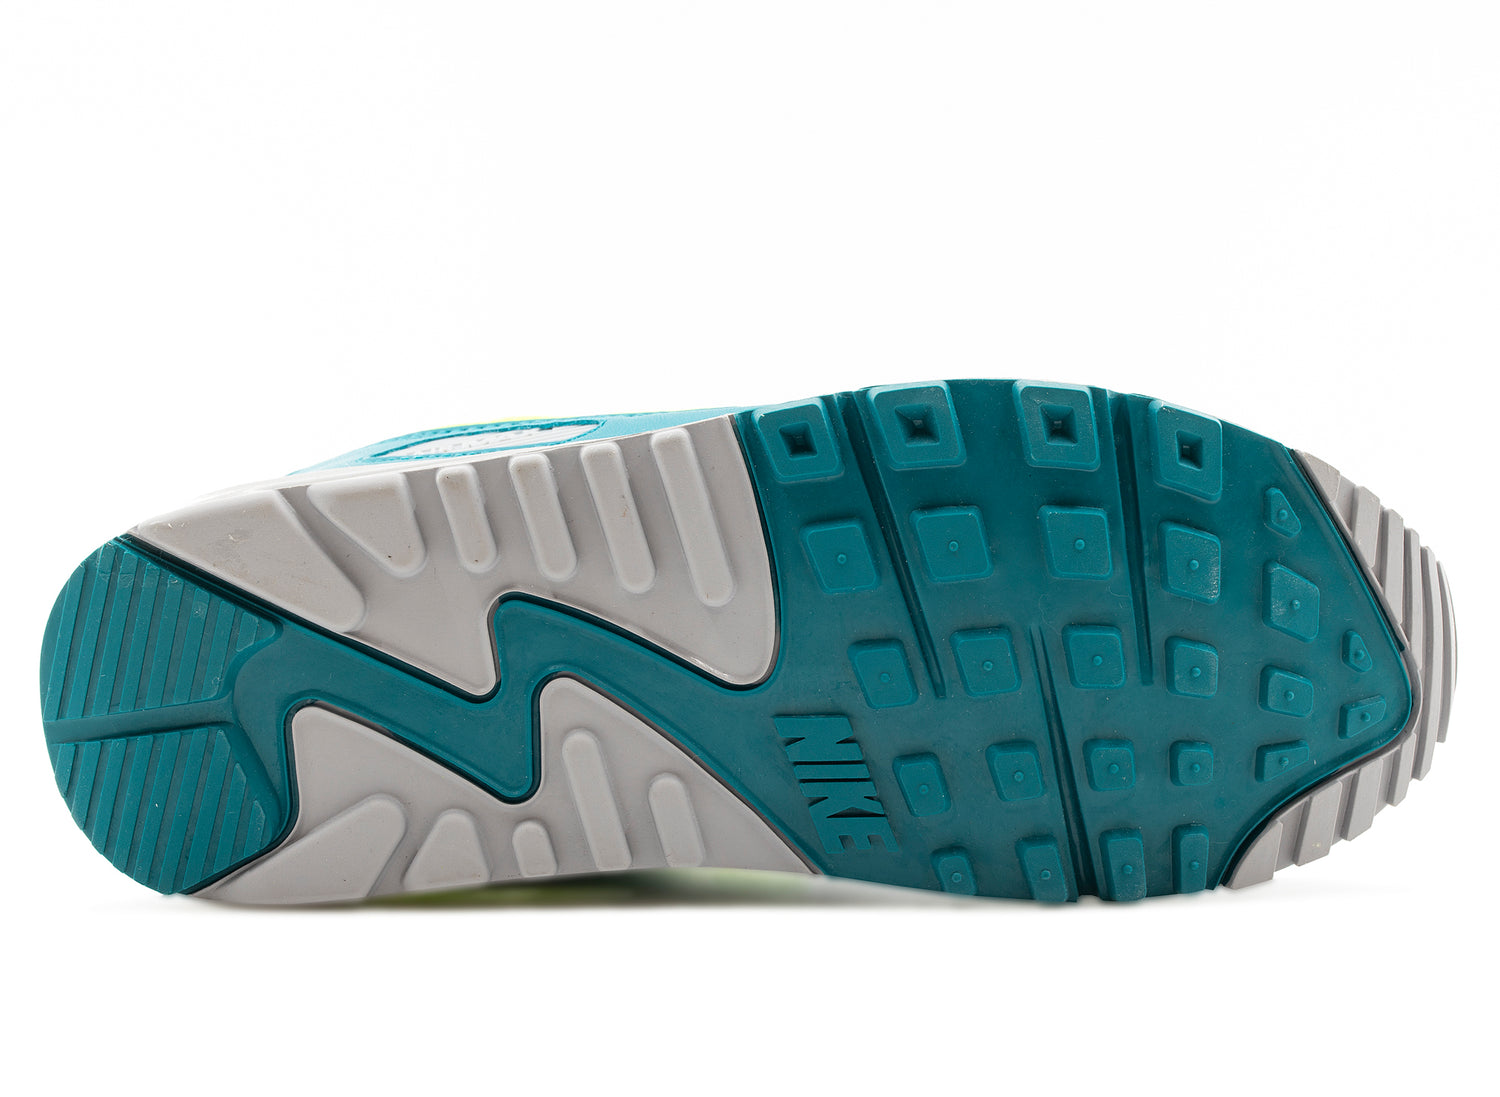 Nike Air Max 3 Sneakers